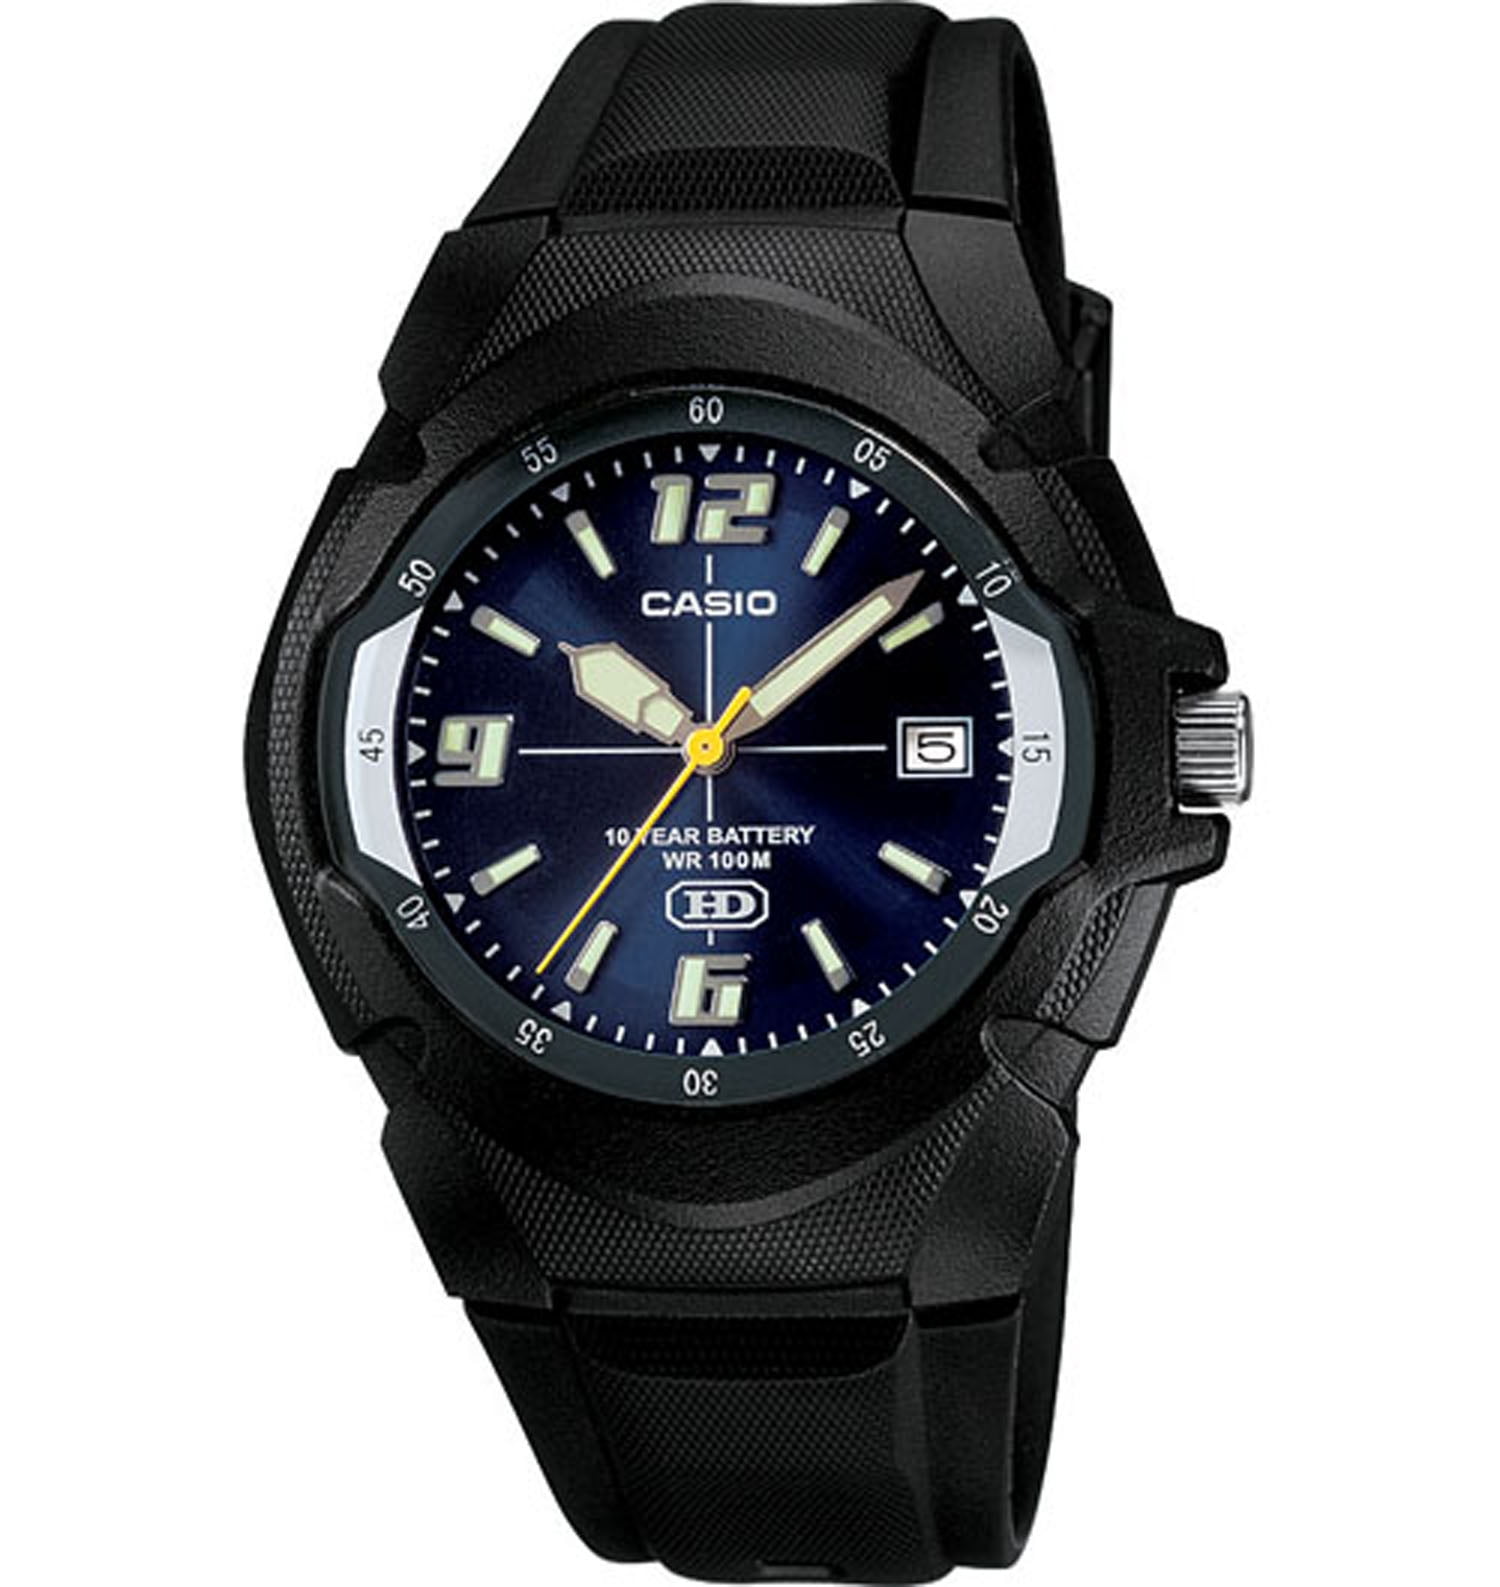 Casio Men’s Classic Digital Sport Watch W800H-1AV – furniturezstore